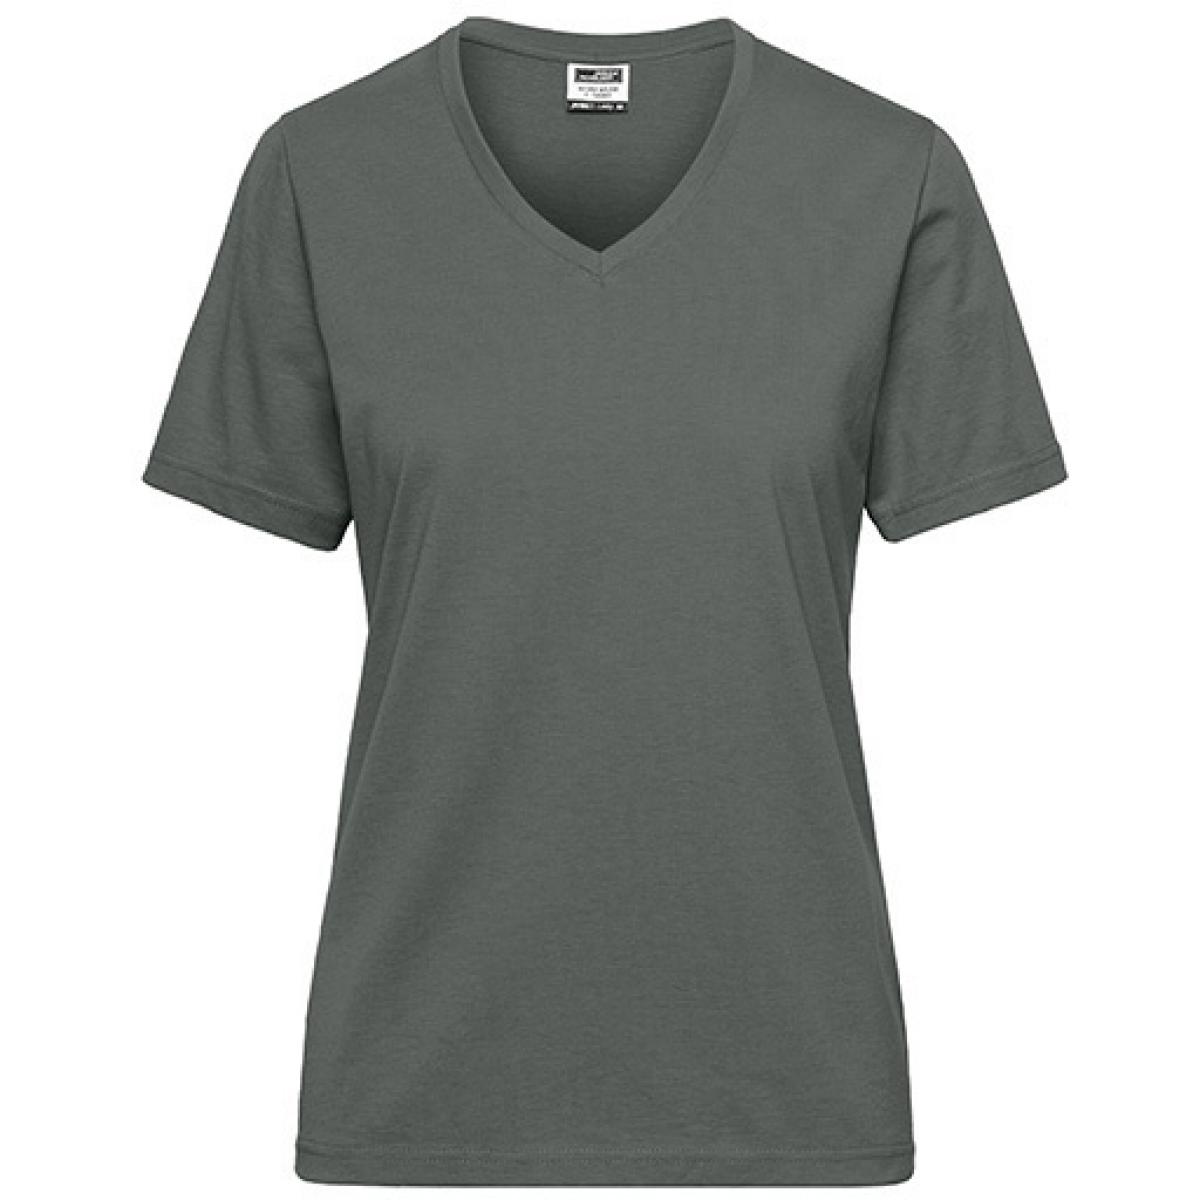 Hersteller: James+Nicholson Herstellernummer: JN1807 Artikelbezeichnung: Ladies‘ BIO Workwear T-Shirt / Damen T-Shirt - Waschbar 60C Farbe: Dark Grey (Solid)